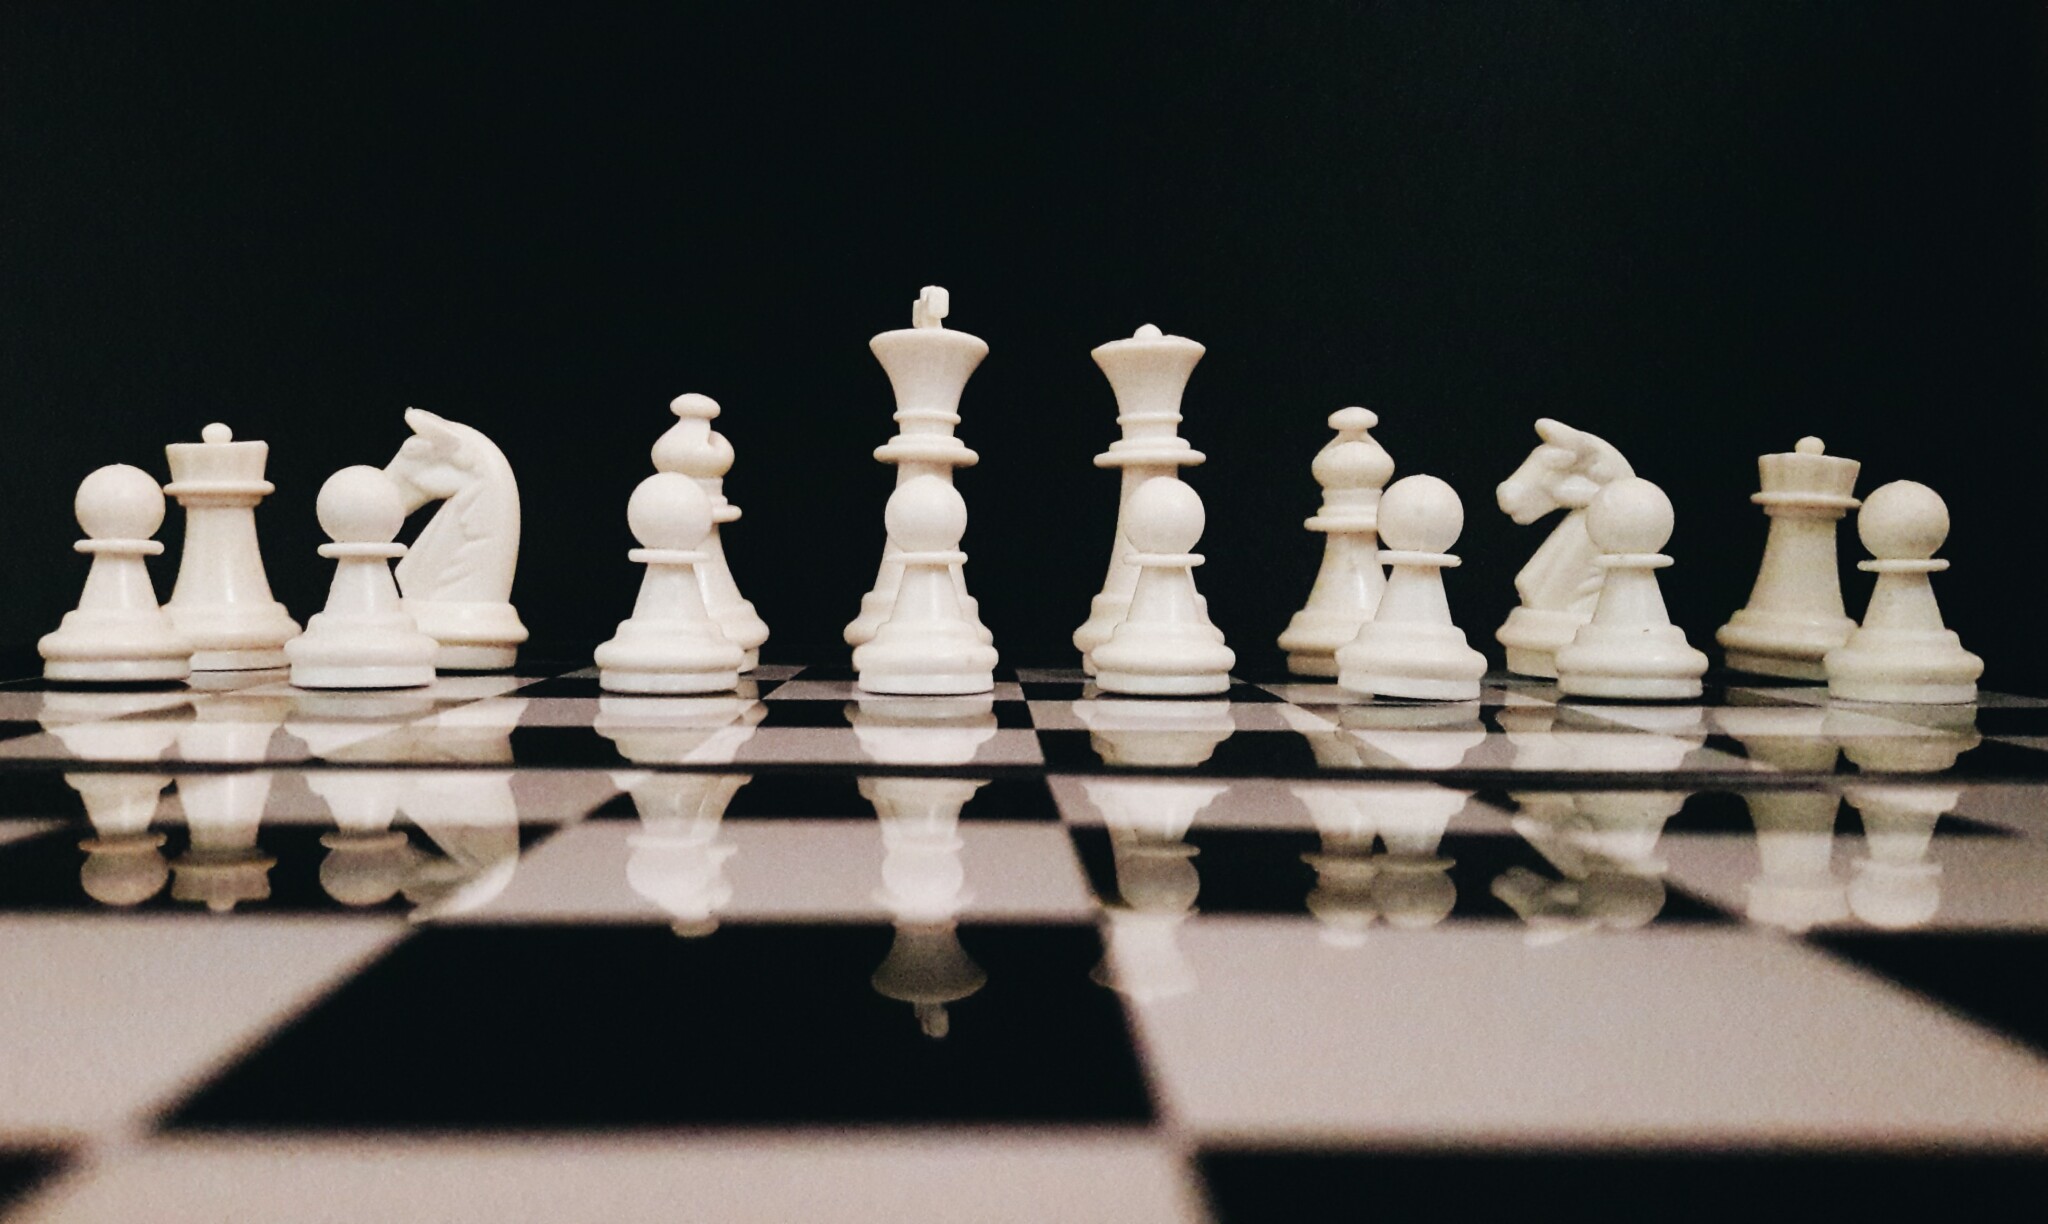 Dramatický souboj o byznys nad online šachovnicí: zvítězí ten, kdo dá konkurenci mat